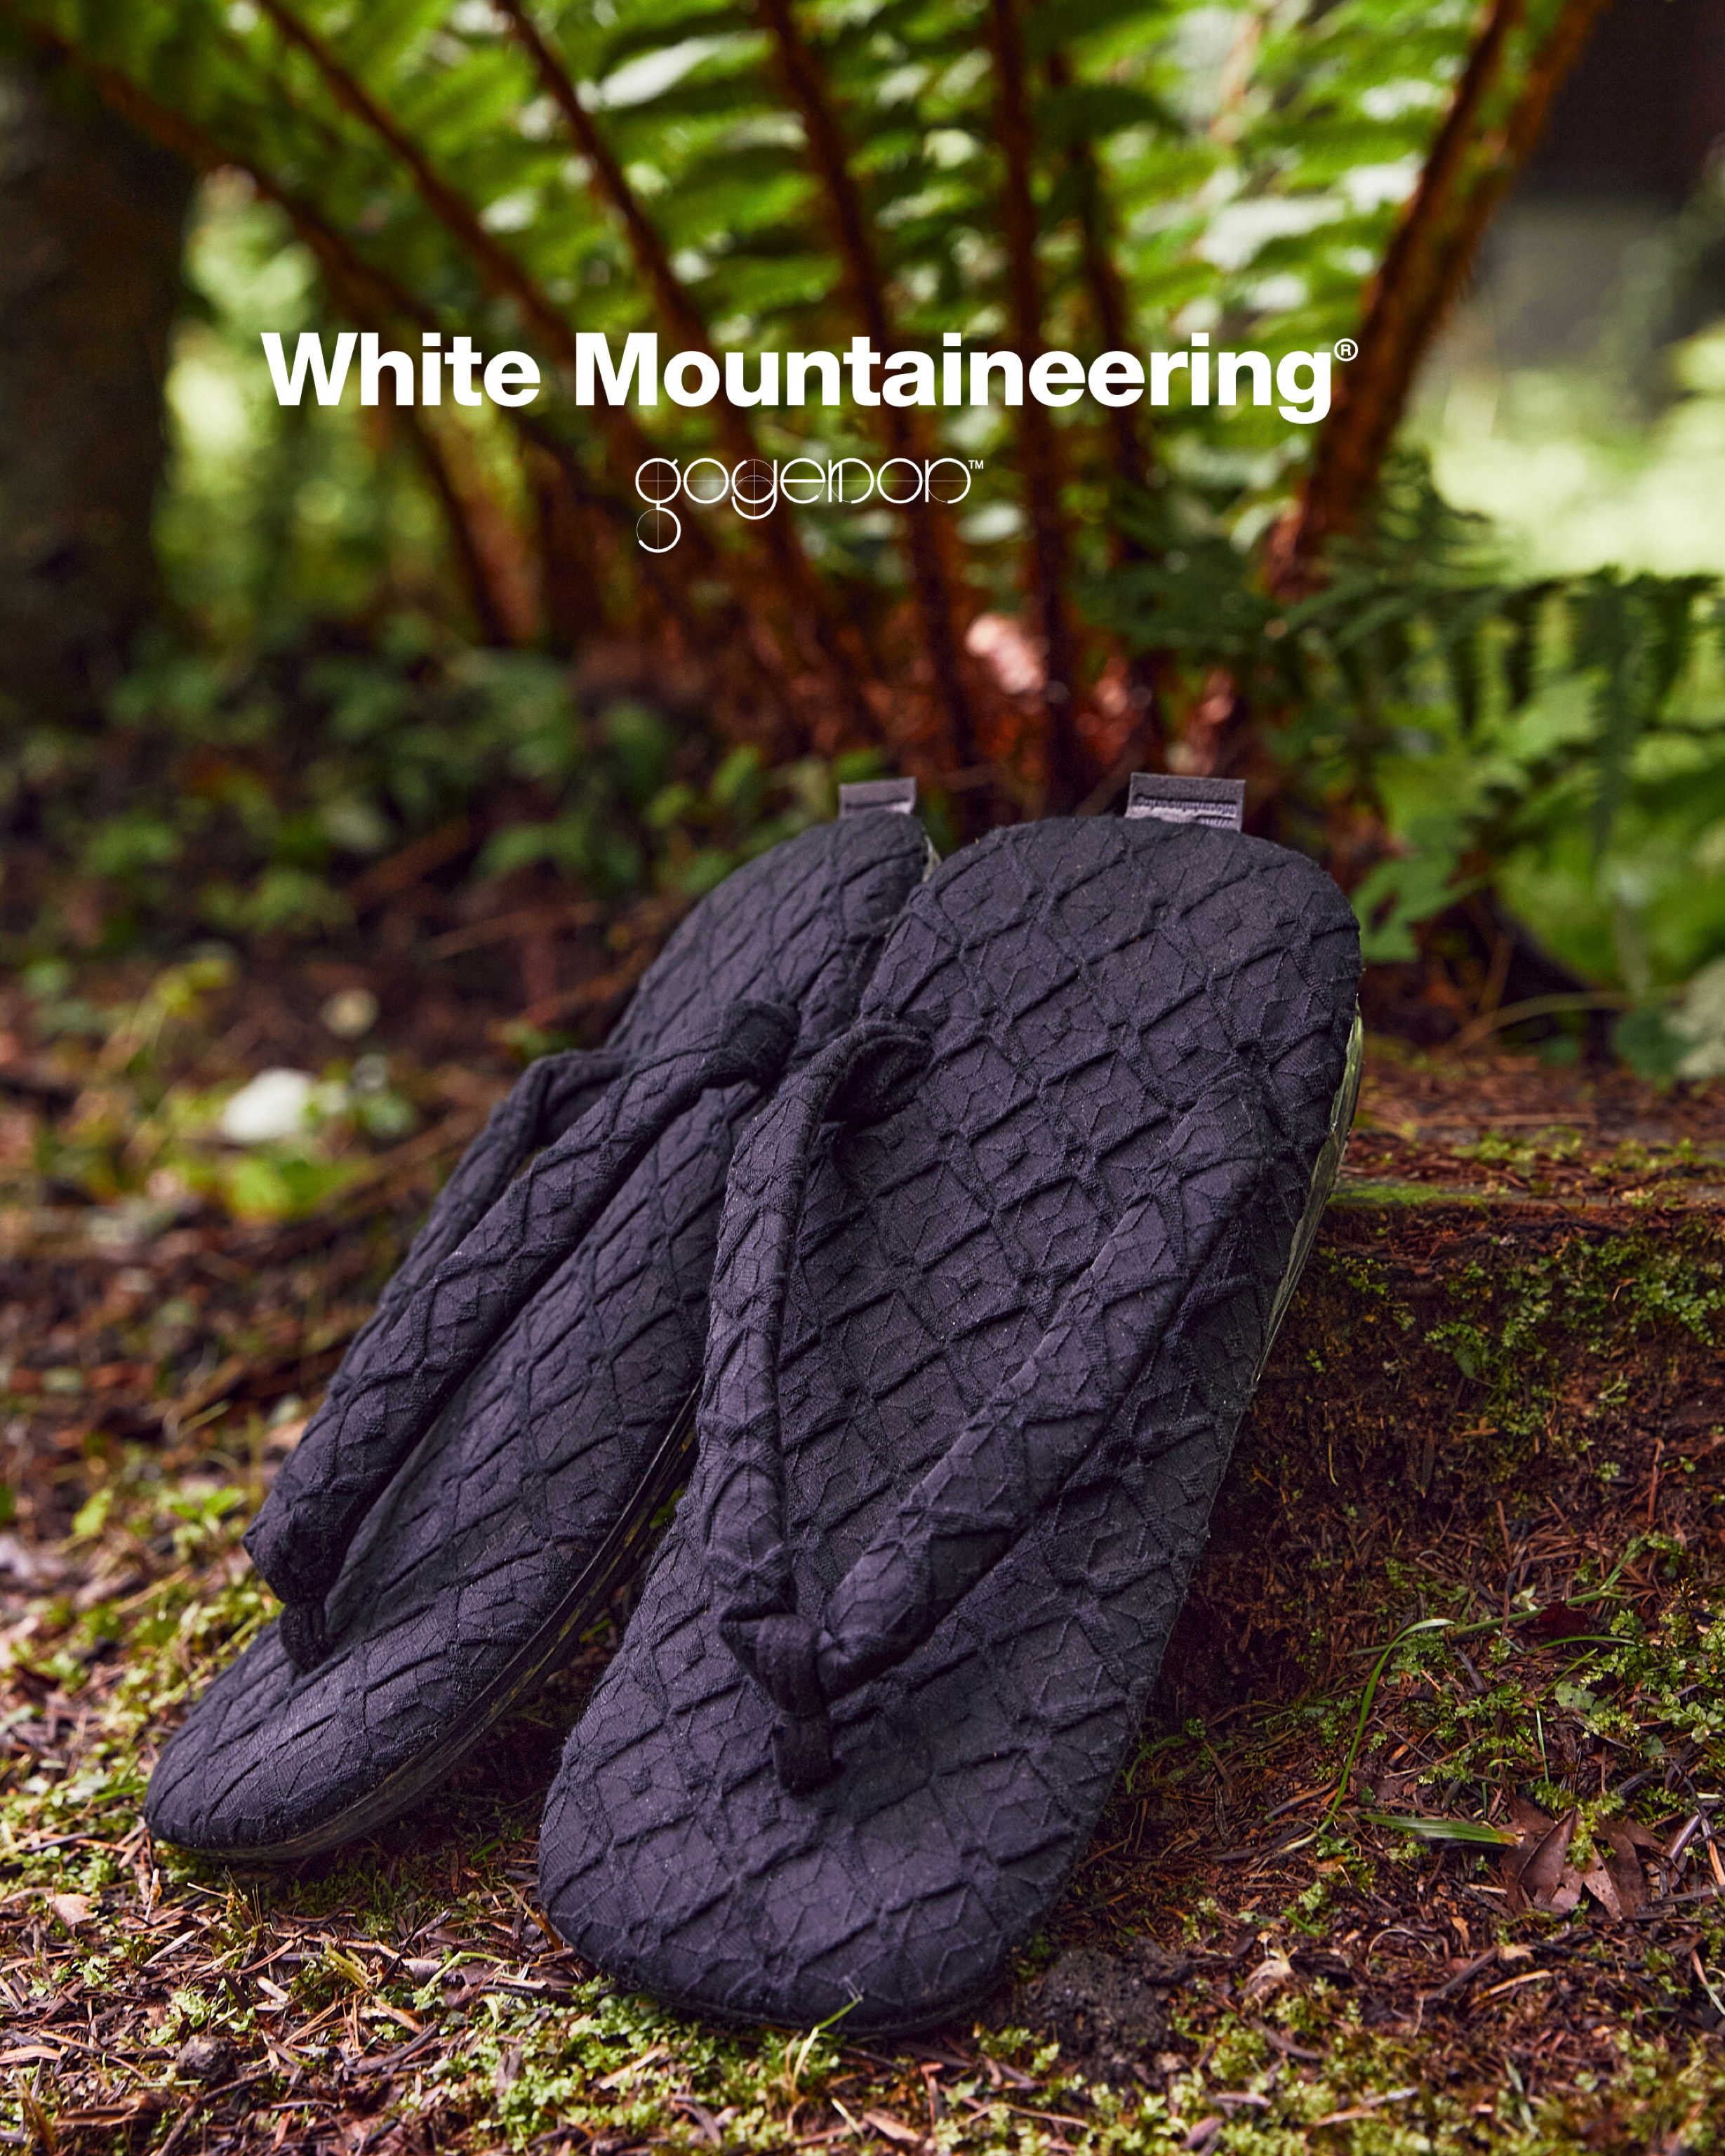 White Mountaineering × GOYEMON – White Mountaineering OFFICIAL WEB